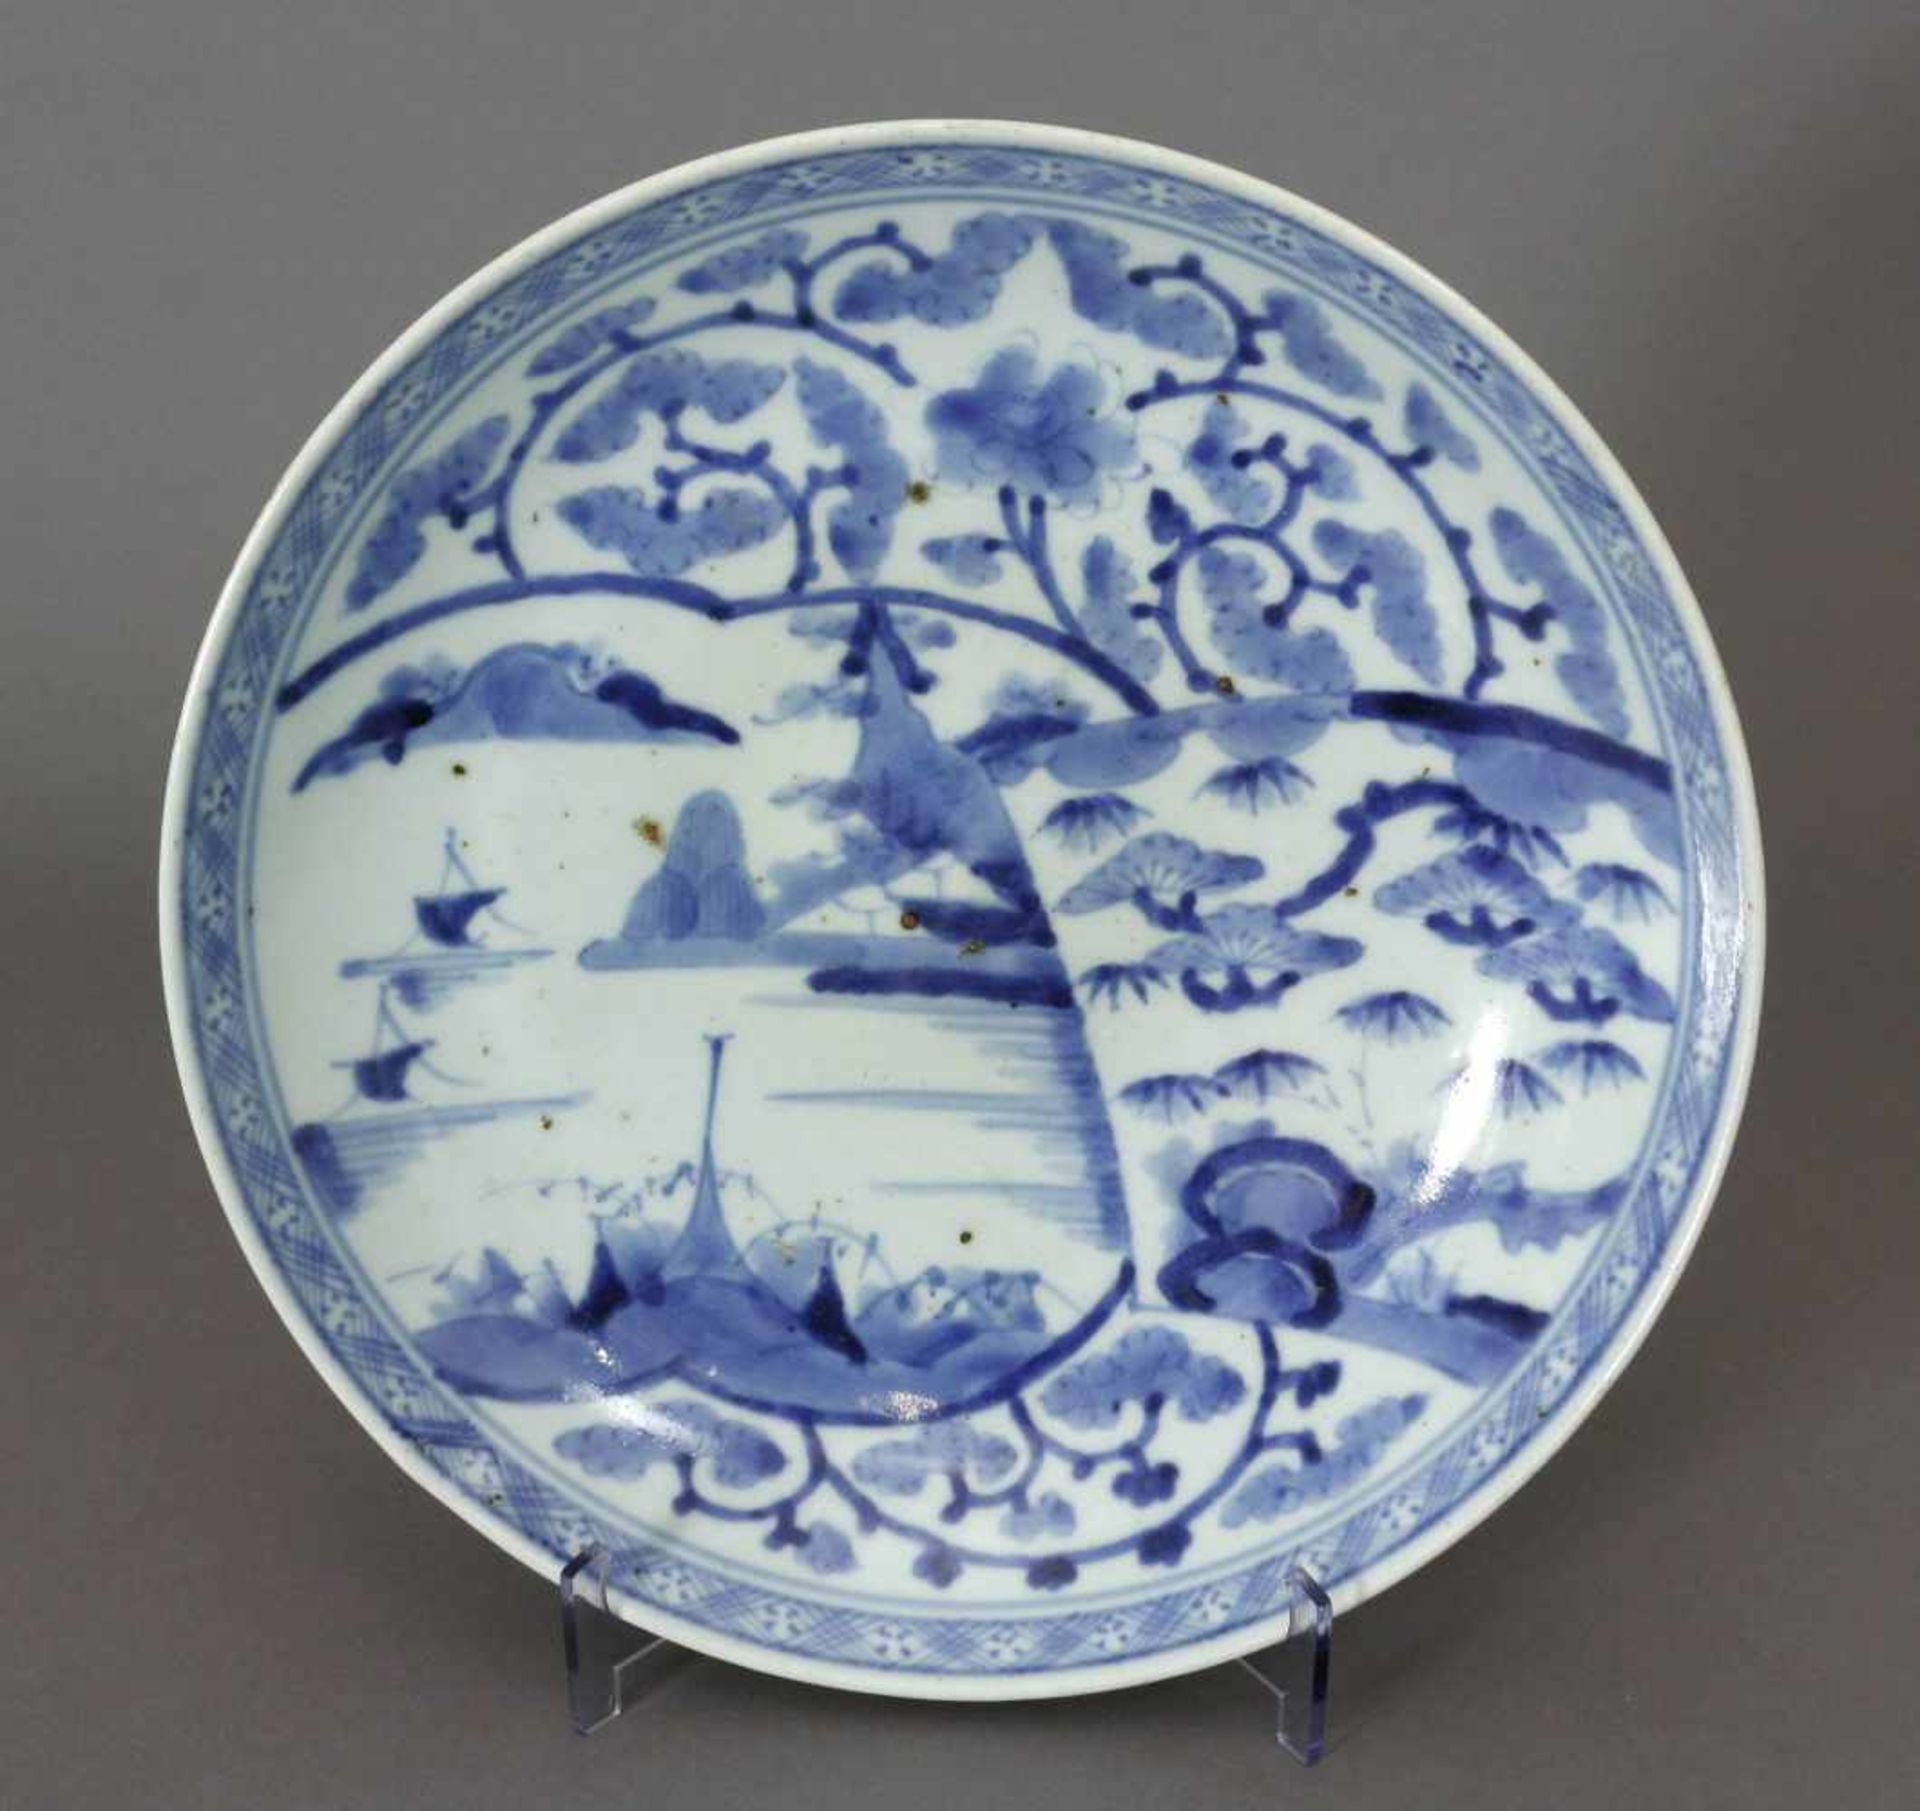 Japan, Schale, Porzellan, Arita, 19. Jh.Rund. Tief gemuldet. Blau/Weiß - Malerei, innen und außen.